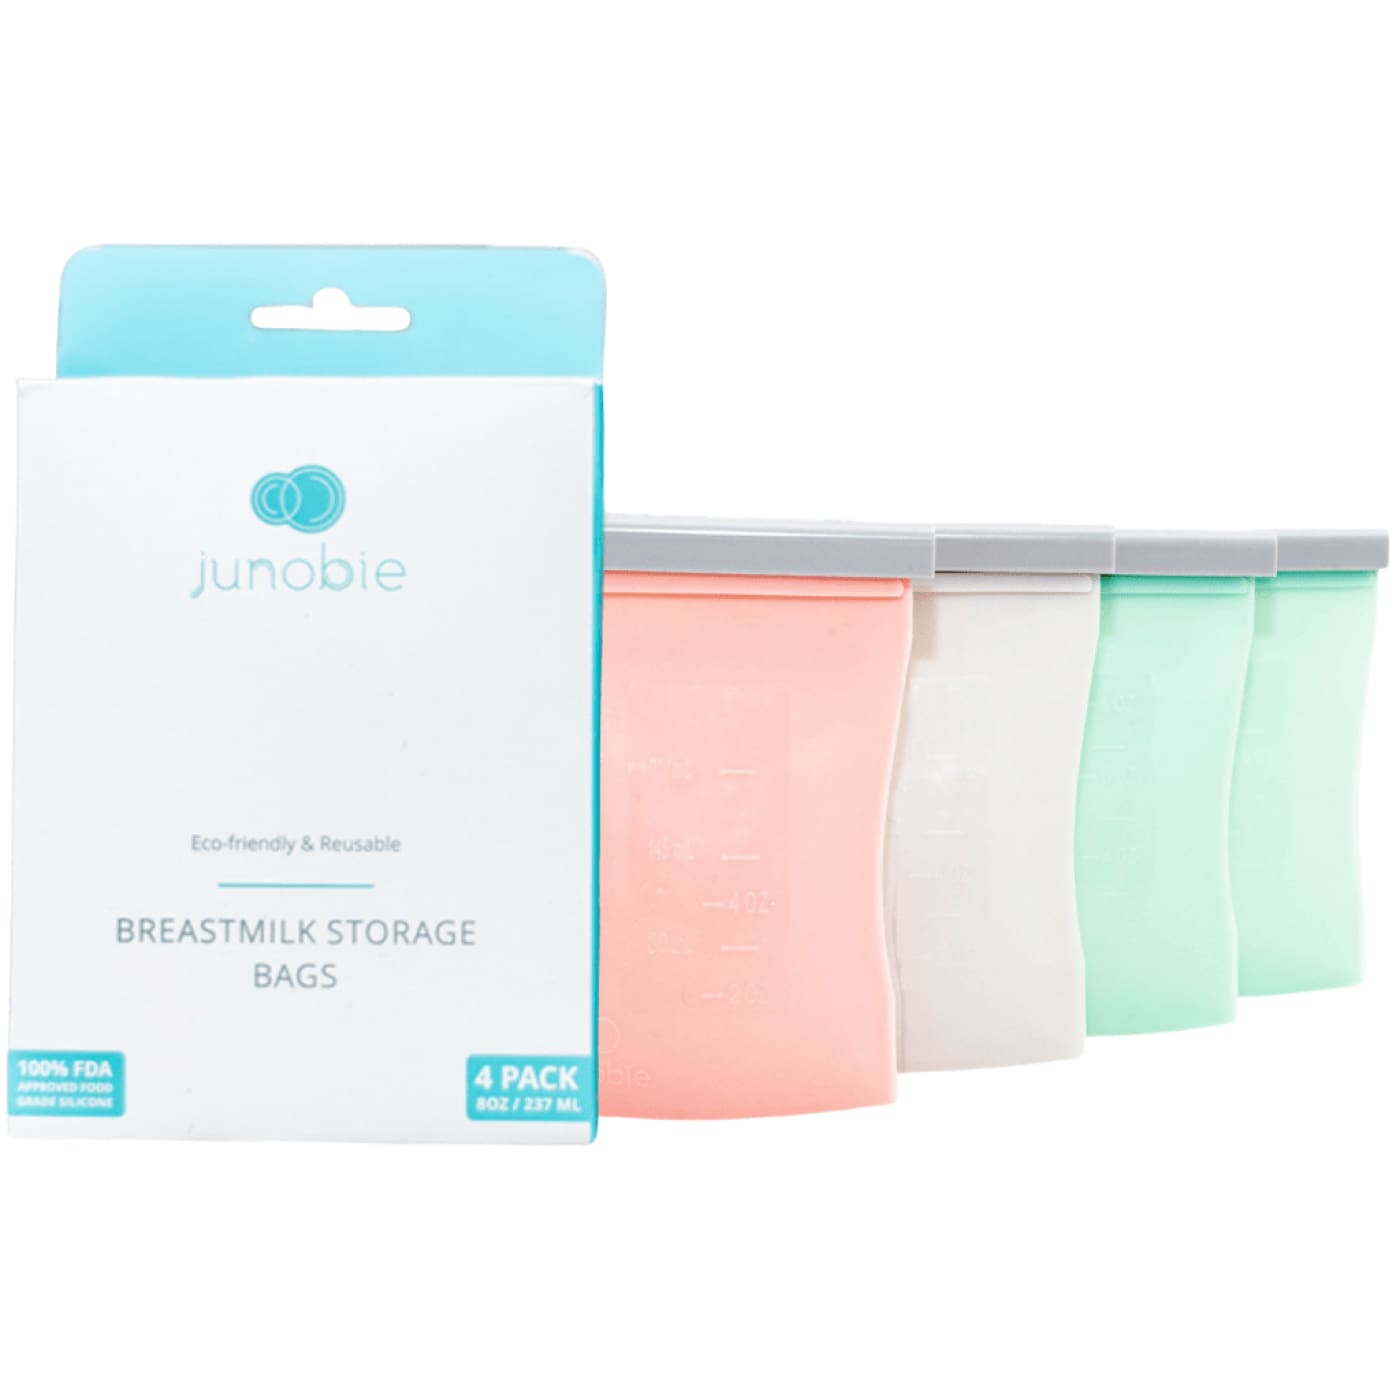 Junobie Reusable Silicone Breastmilk Storage Bags 4Pack - NURSING & FEEDING - CONTAINERS/FEEDERS